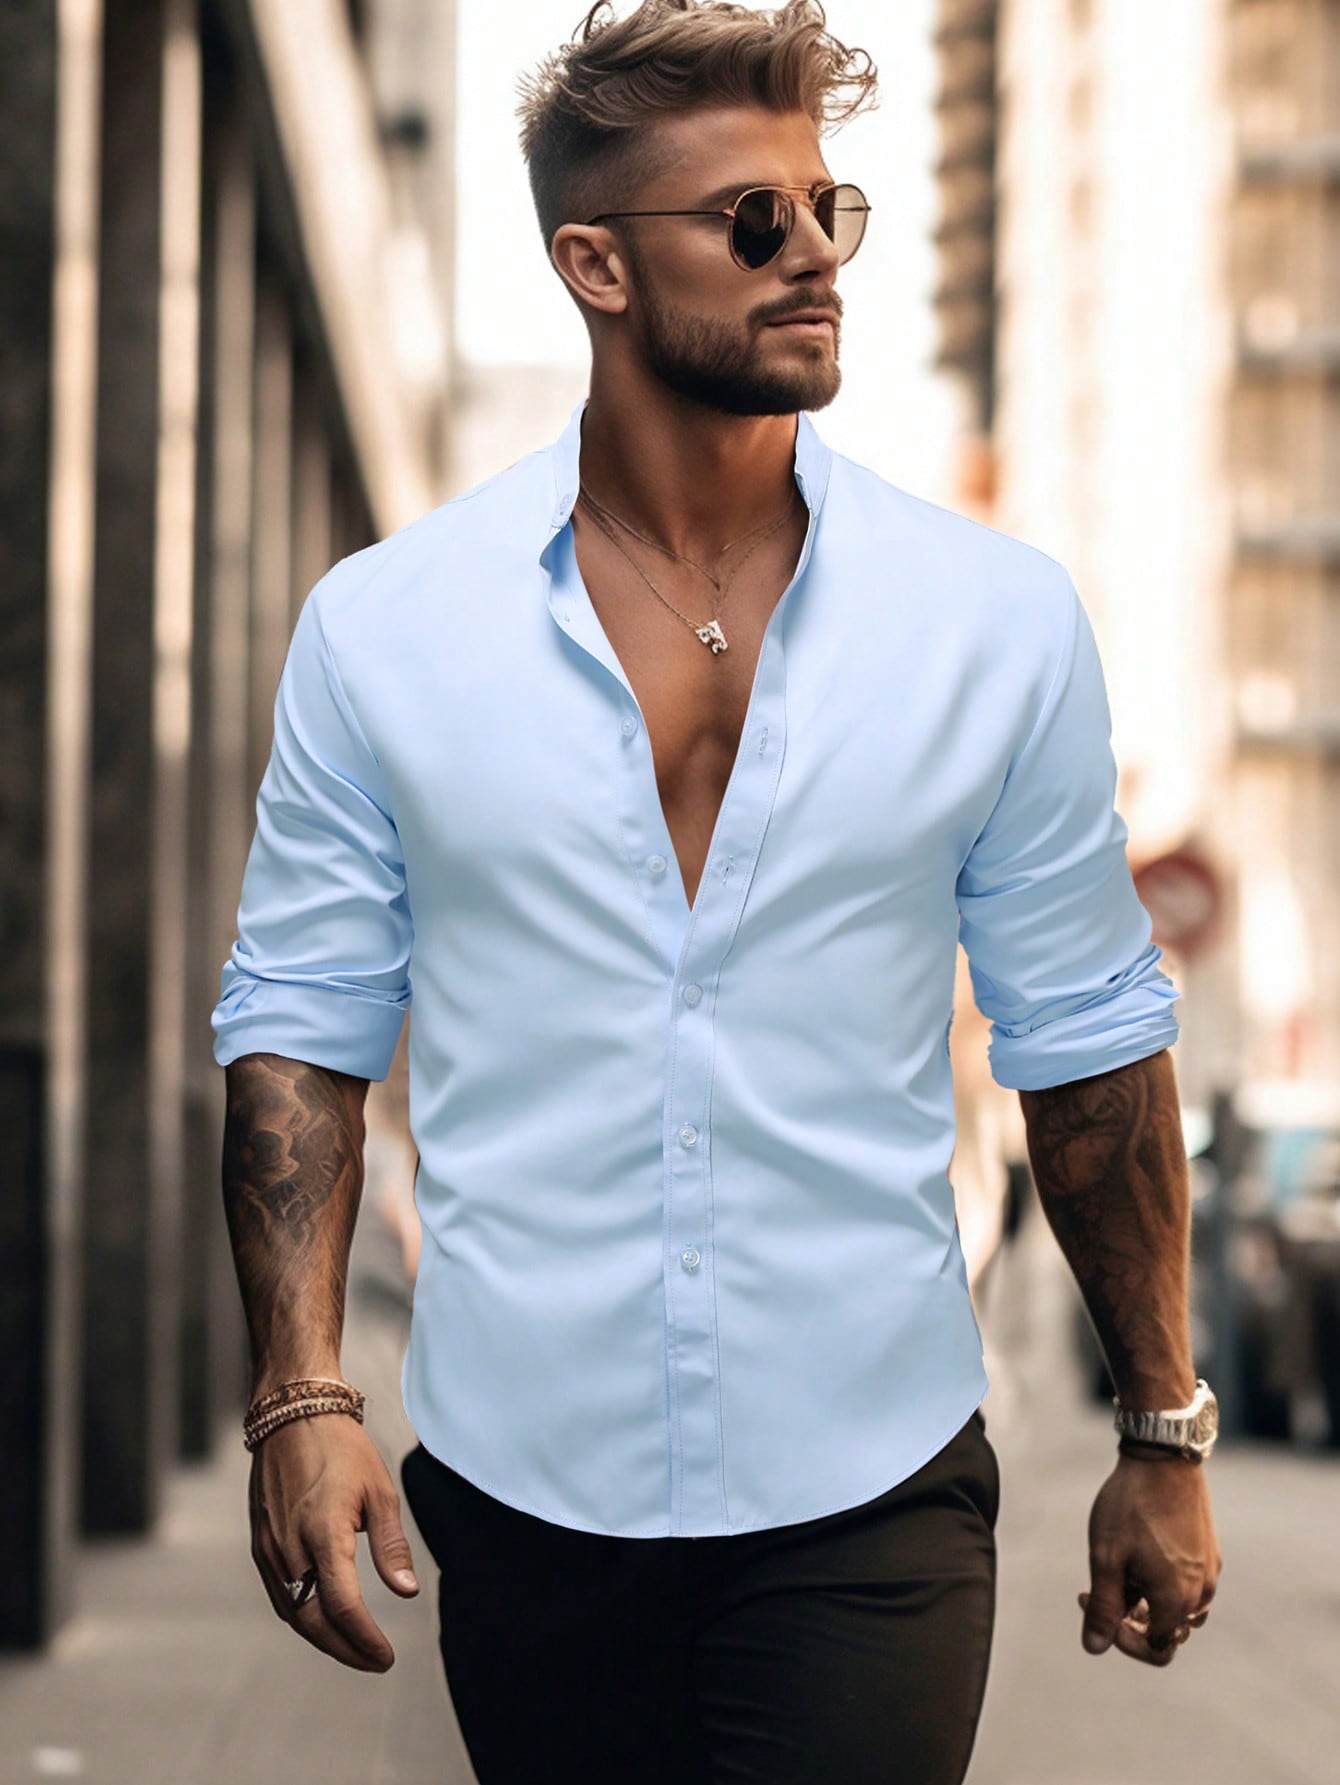 Мужская рубашка с длинным рукавом и воротником-стойкой Manfinity Homme, голубые рубашка мужская льняная с длинным рукавом мешковатая блуза с принтом в полоску с воротником стойкой на пуговицах топ мужская одежда лето